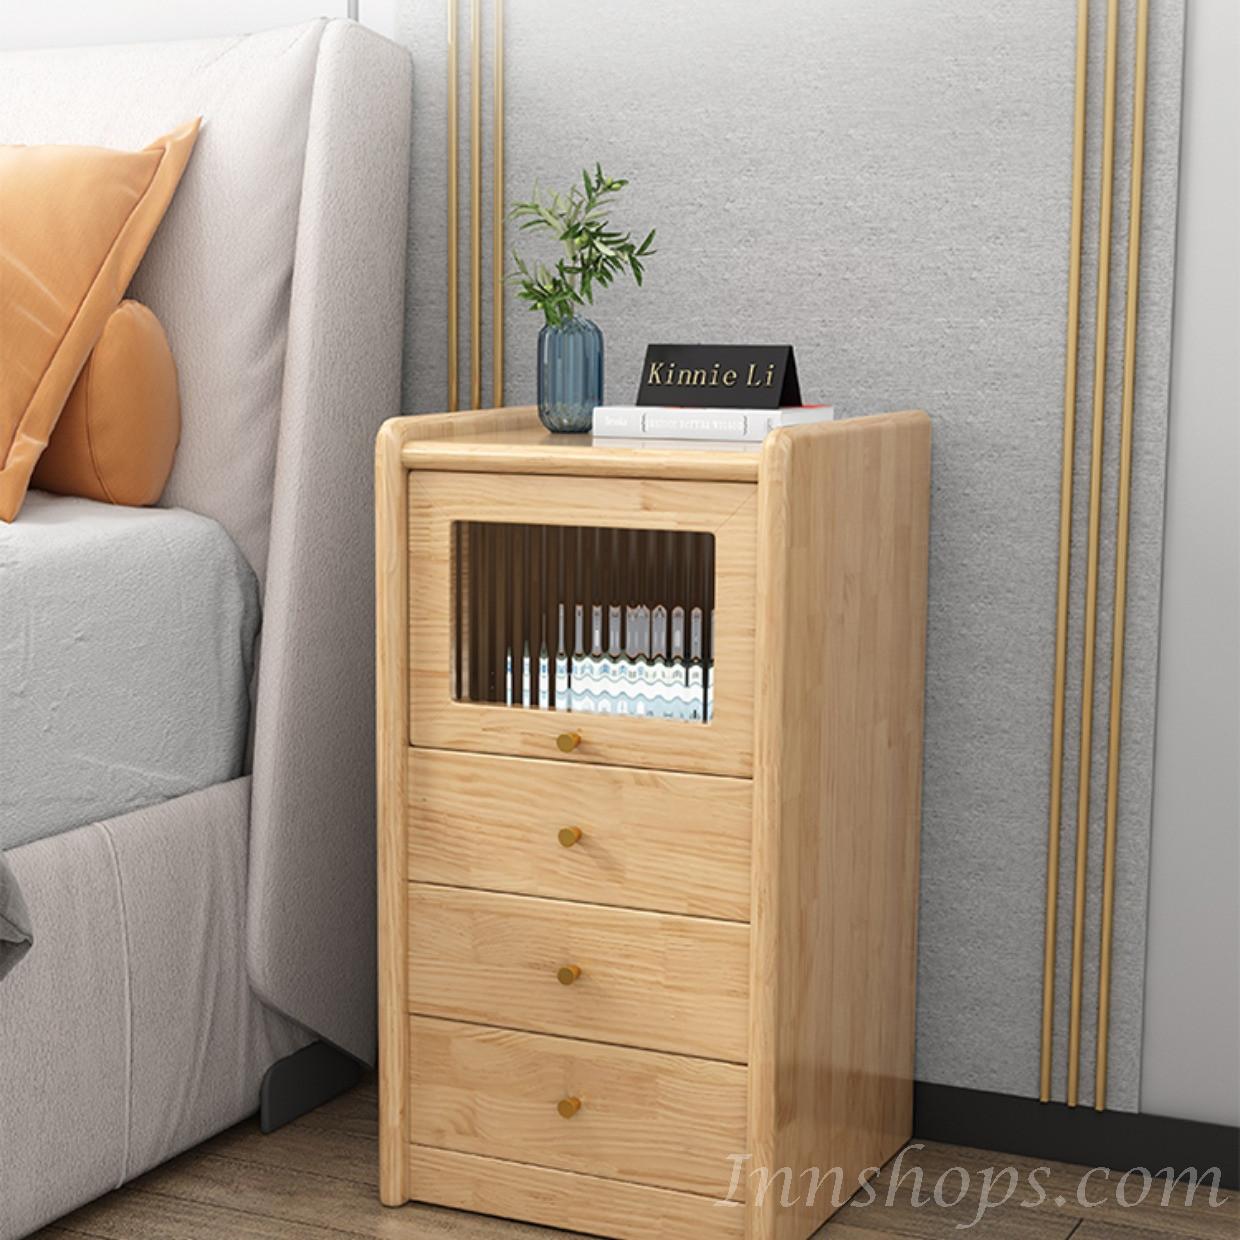 芬蘭實木松木系列 小型床邊櫃 床頭櫃/茶几 33cm (IS8336)